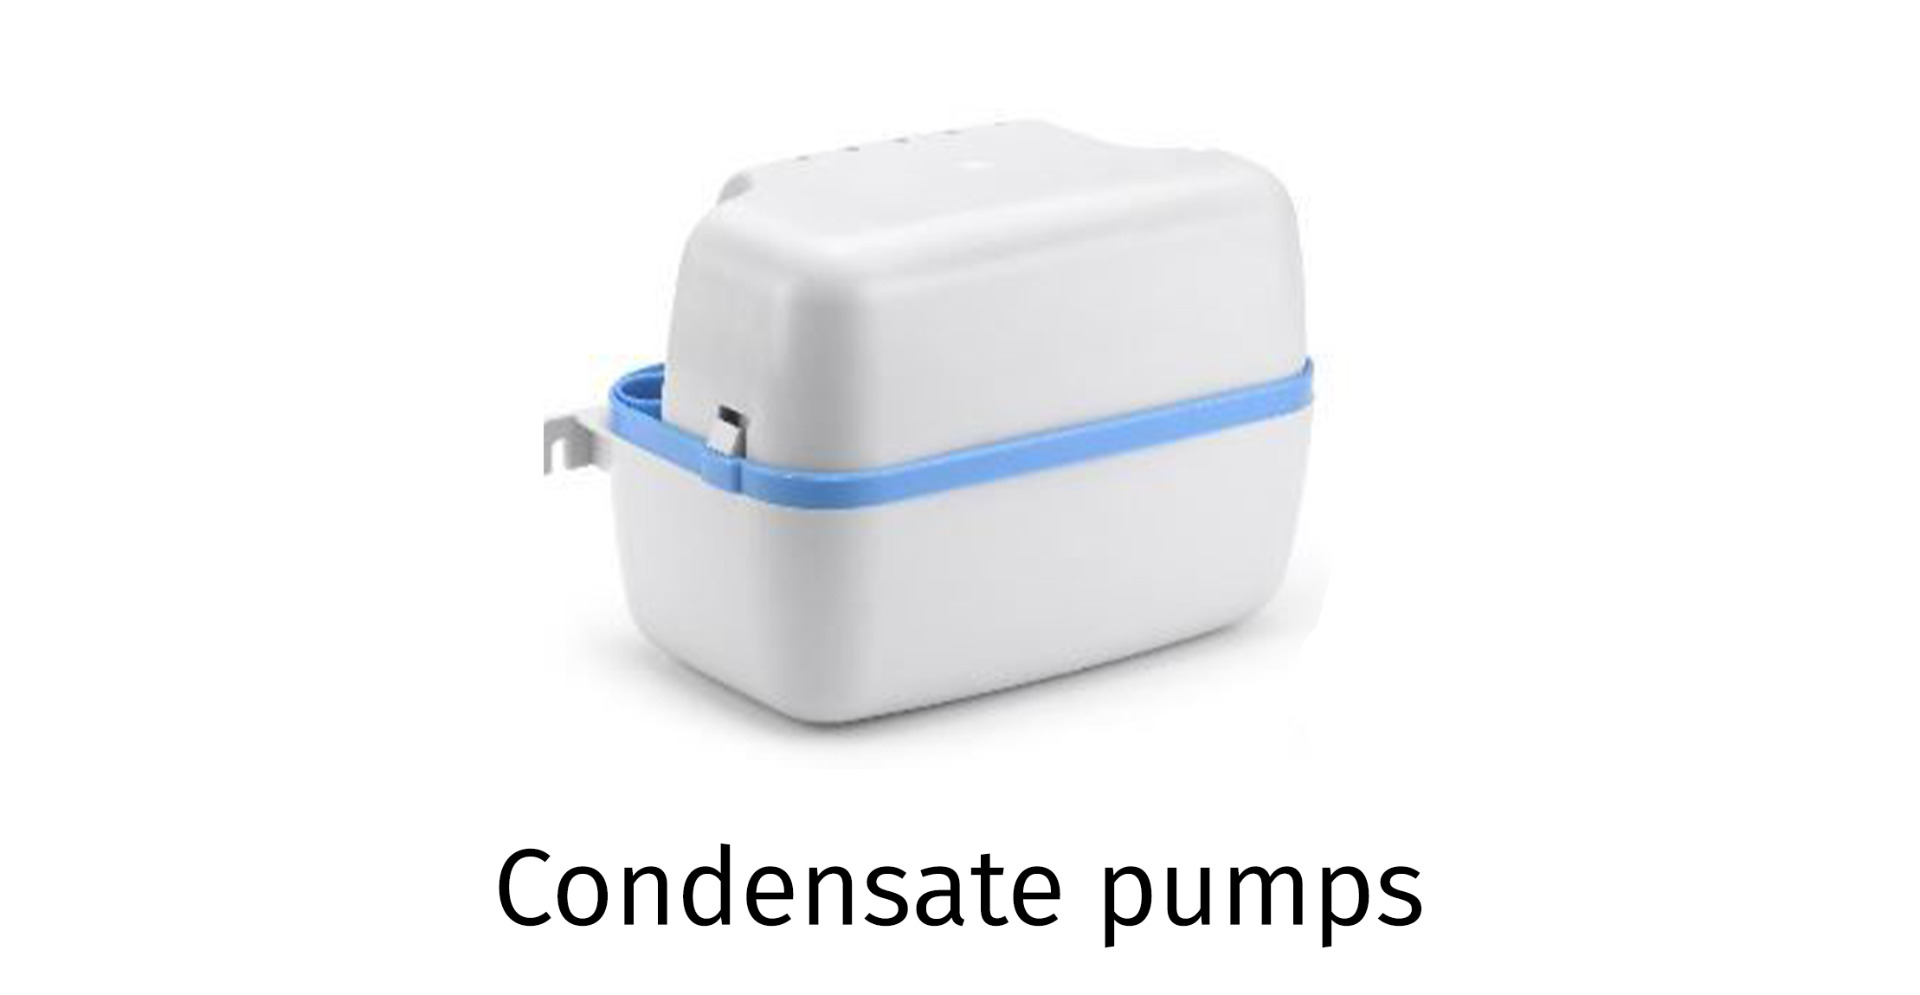 Condensate pumps